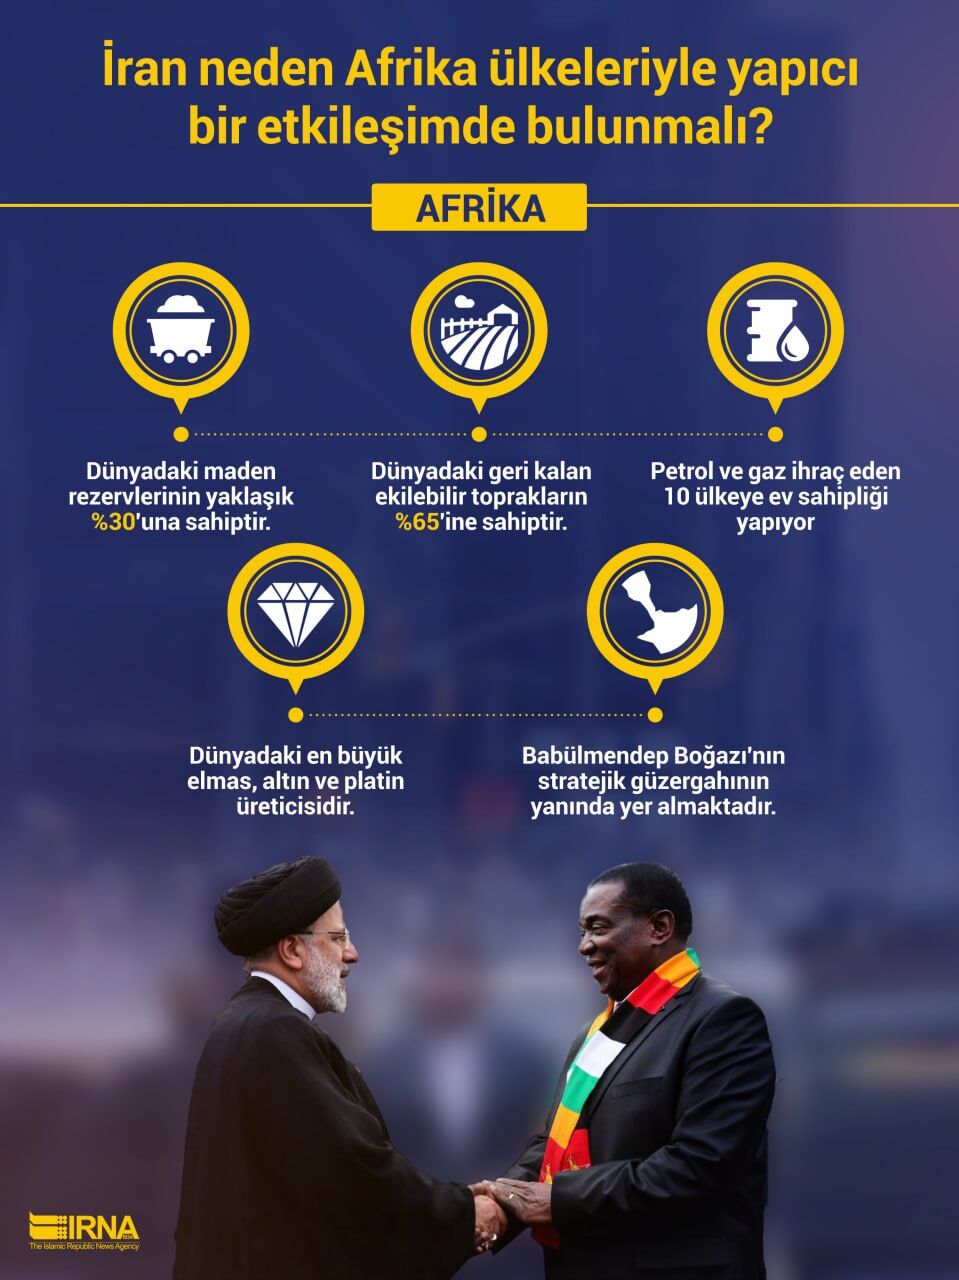 İran neden Afrika ülkeleriyle yapıcı bir etkileşimde bulunmalı?